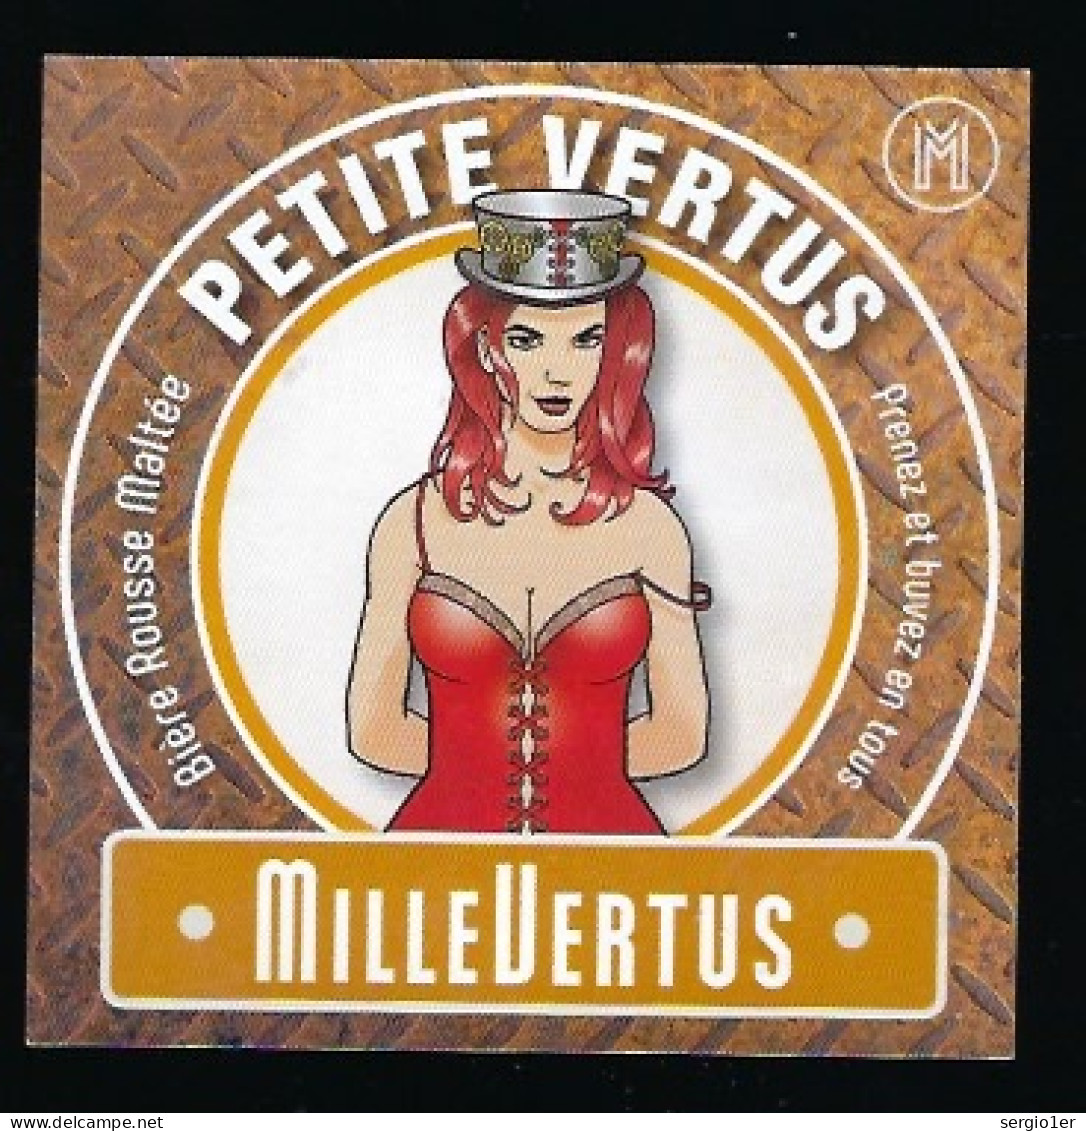 étiquette Bière Belge: Biere Rousse Maltée  Petite Vertus 4,7°% Brasserie Millevertus à Tintigny " Femme" - Beer